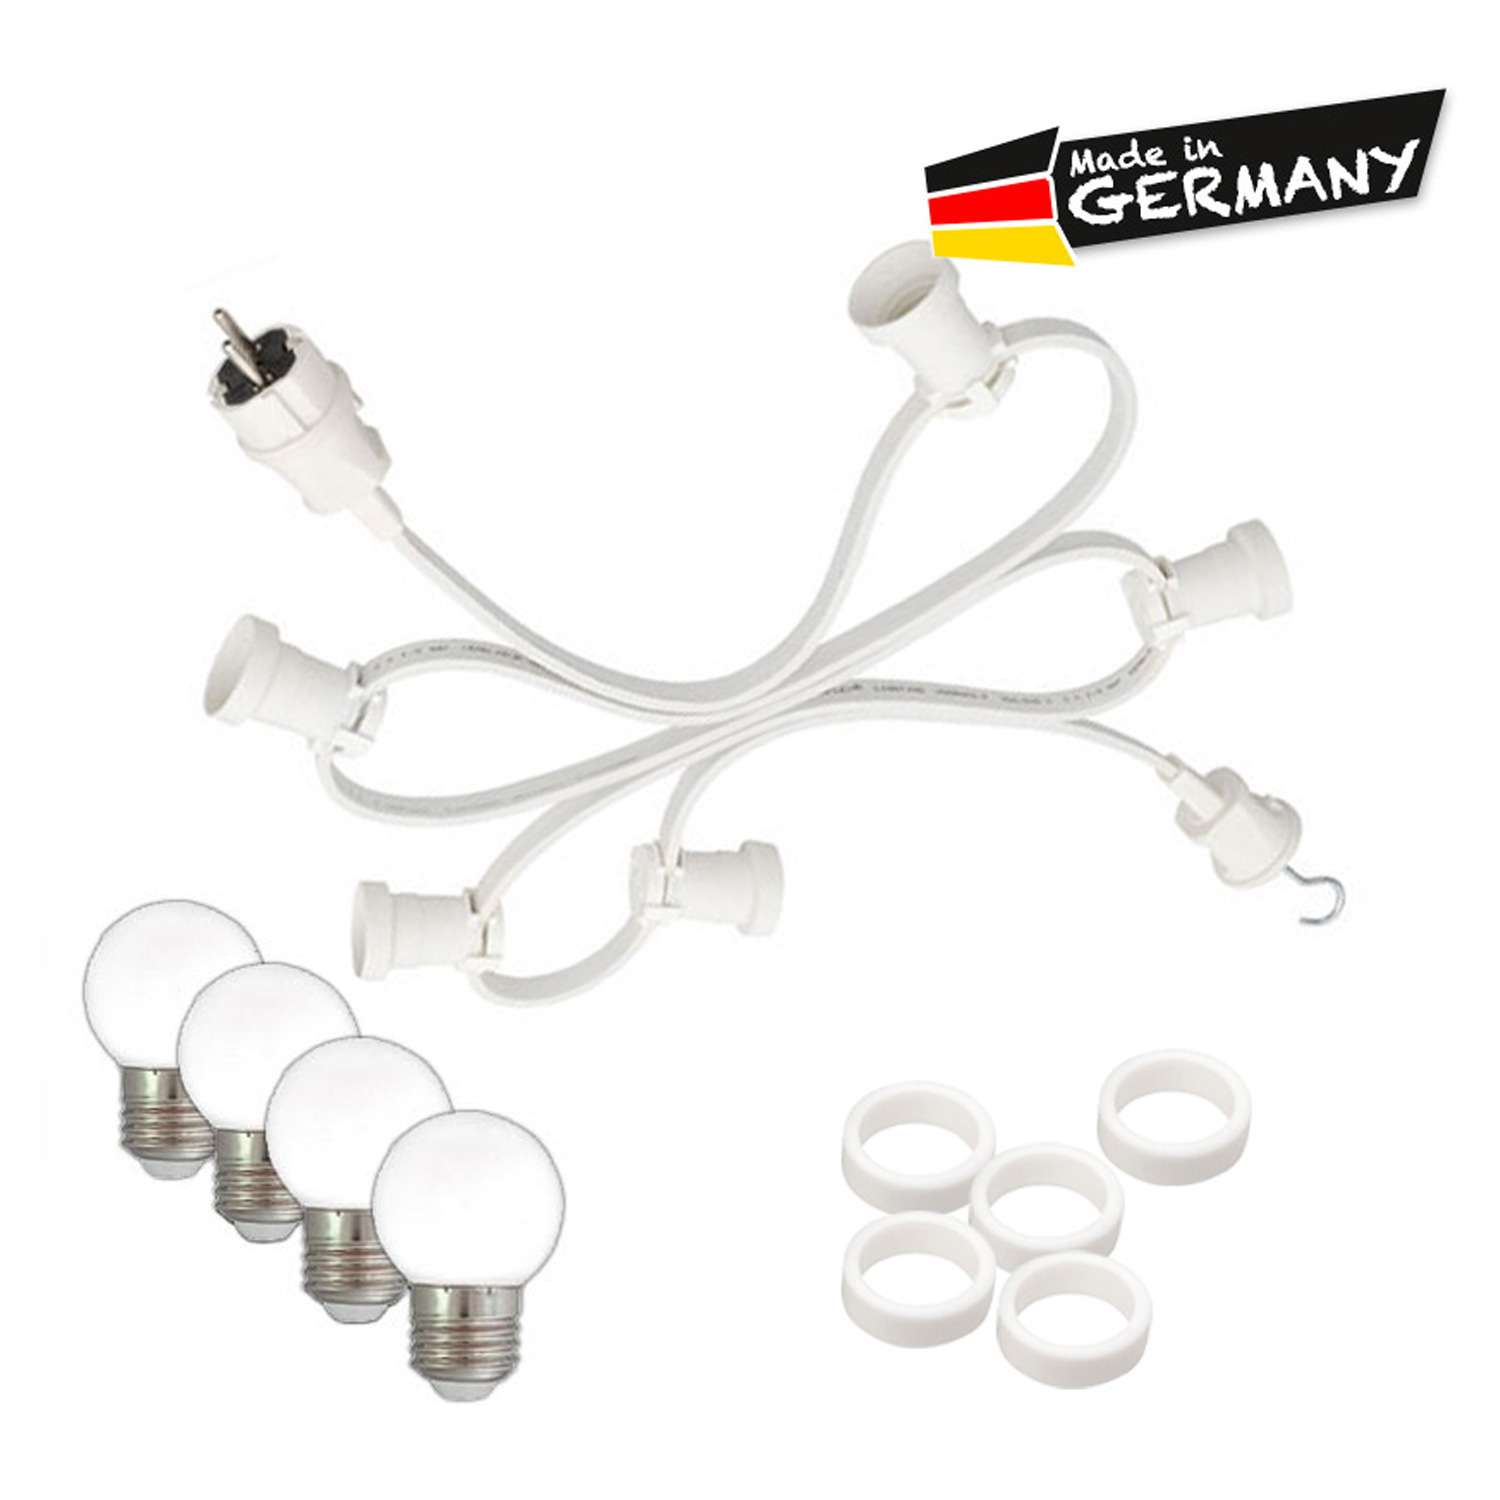 Illu-/Partylichterkette 5m - Außenlichterkette - Made in Germany - 5 x warmweiße LED Kugellampen